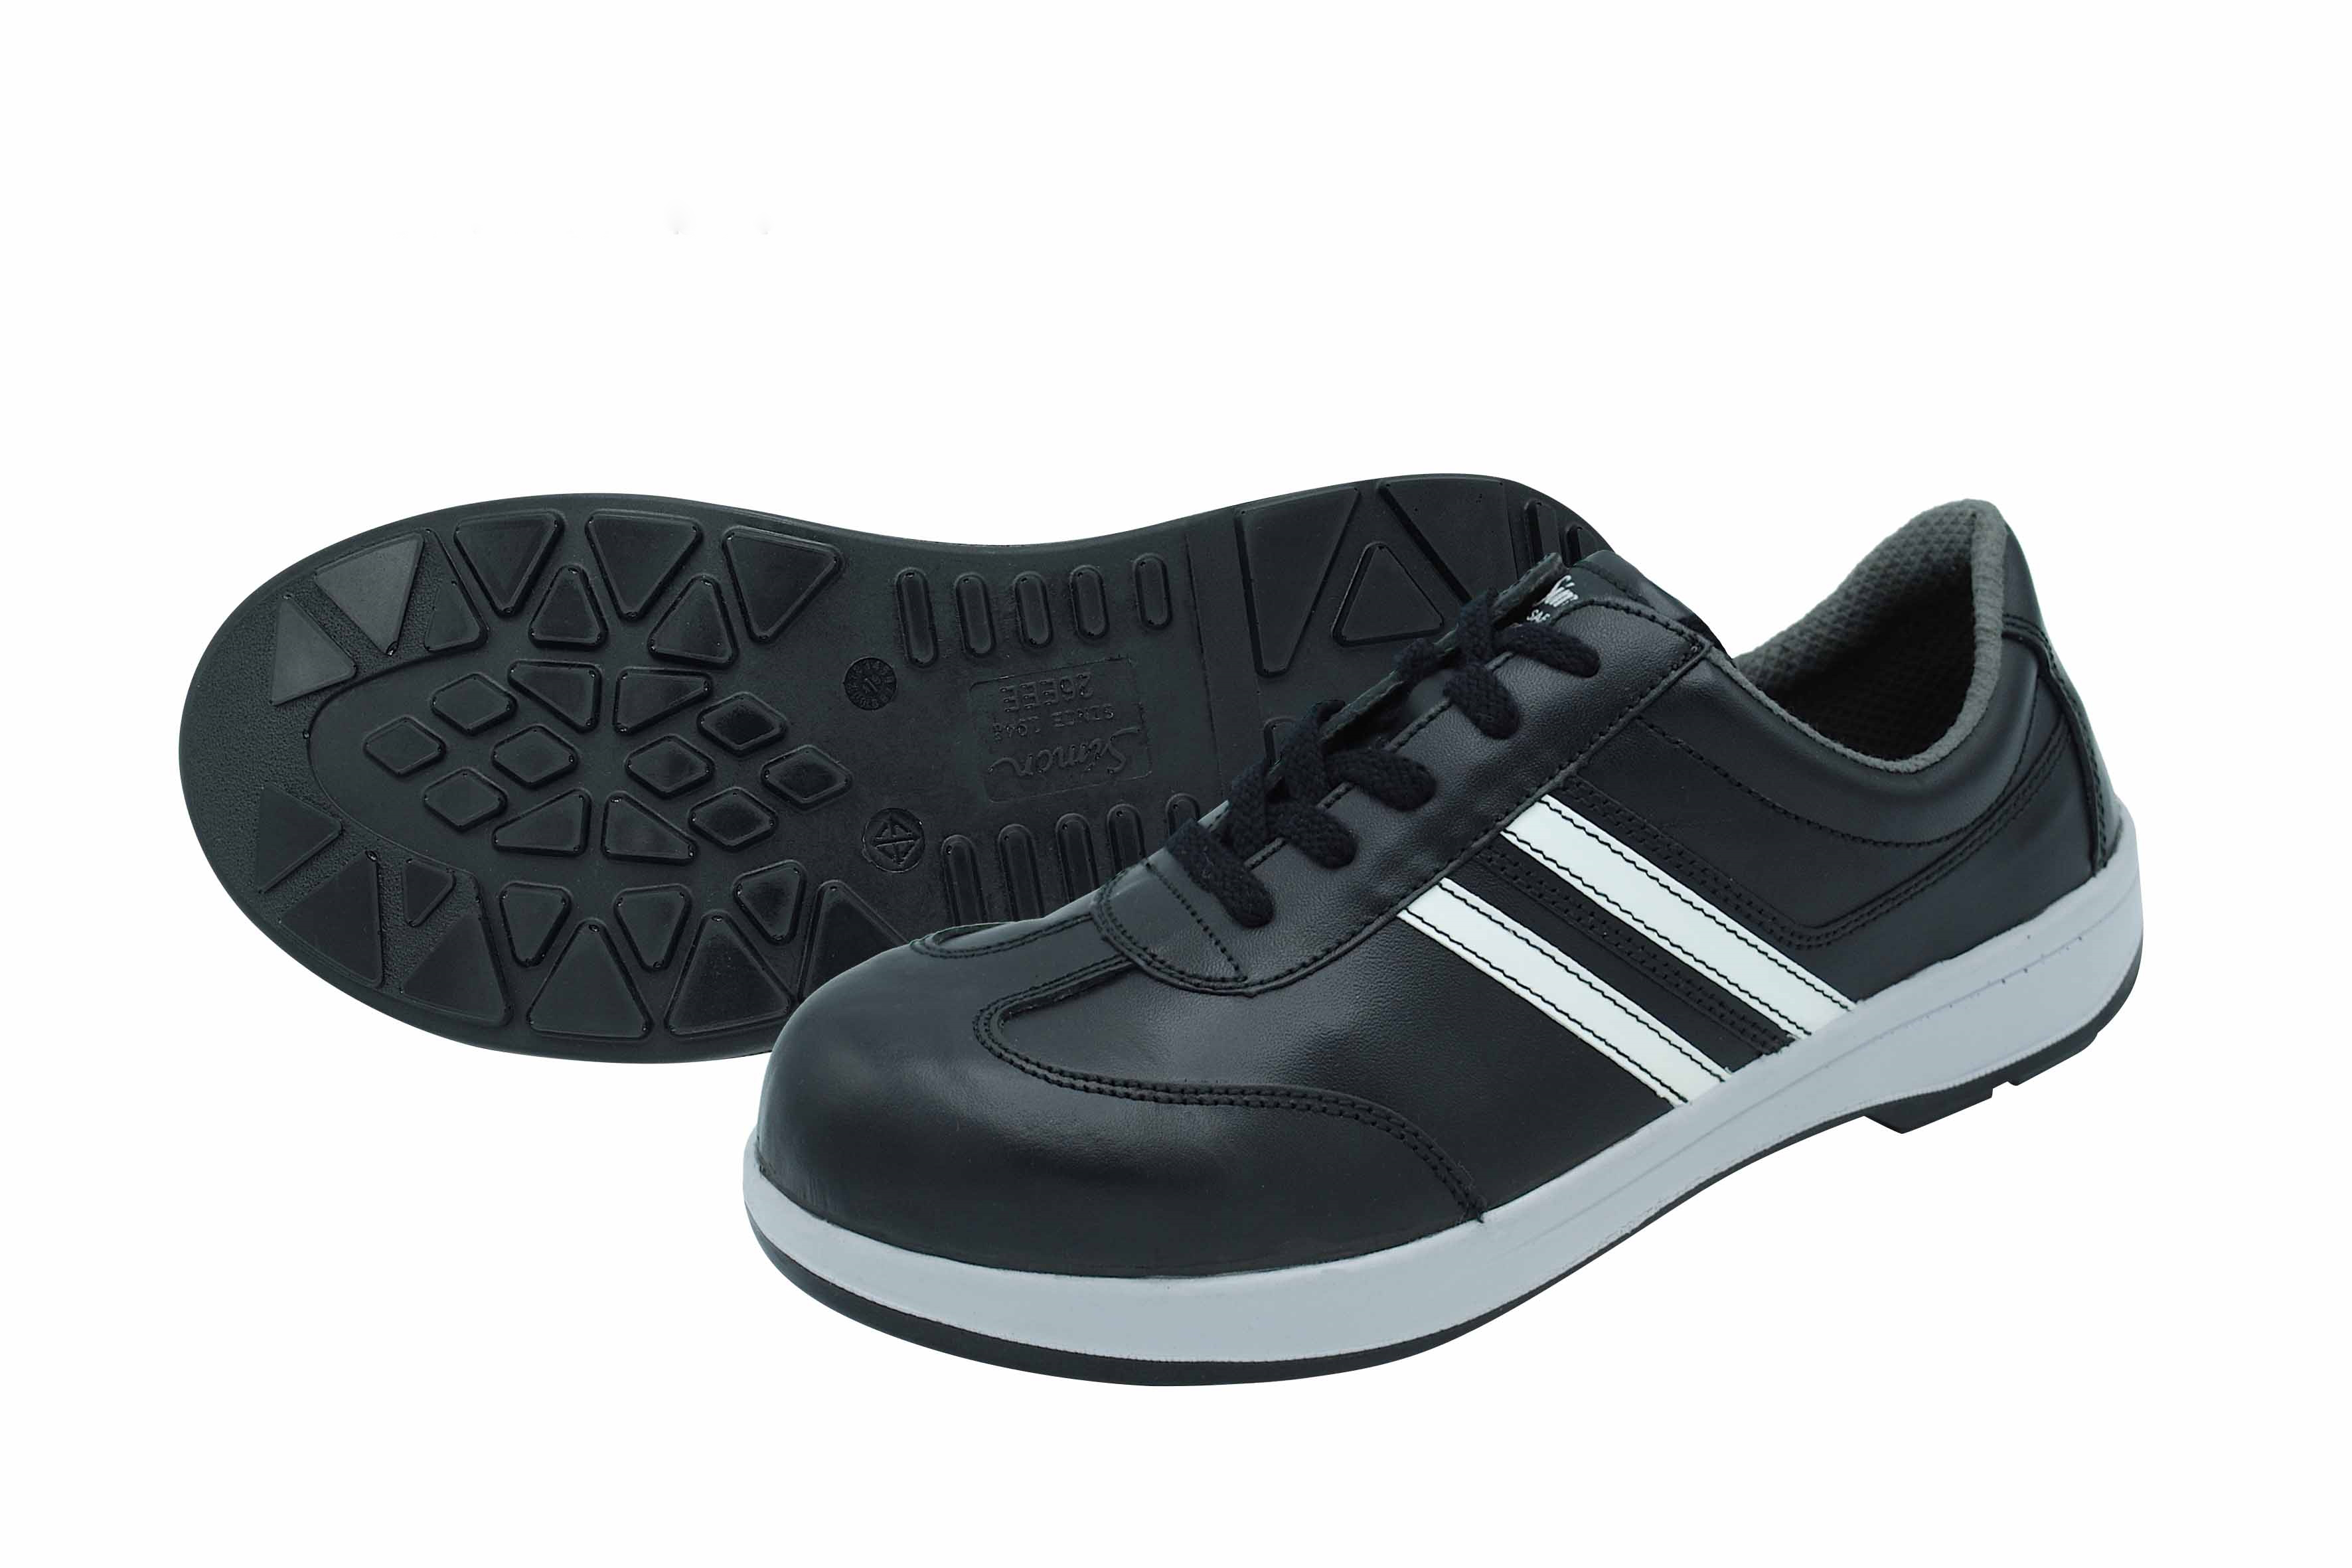 Safety Shoes TSBZ11 Black (TSBZ11-BK-22.5)